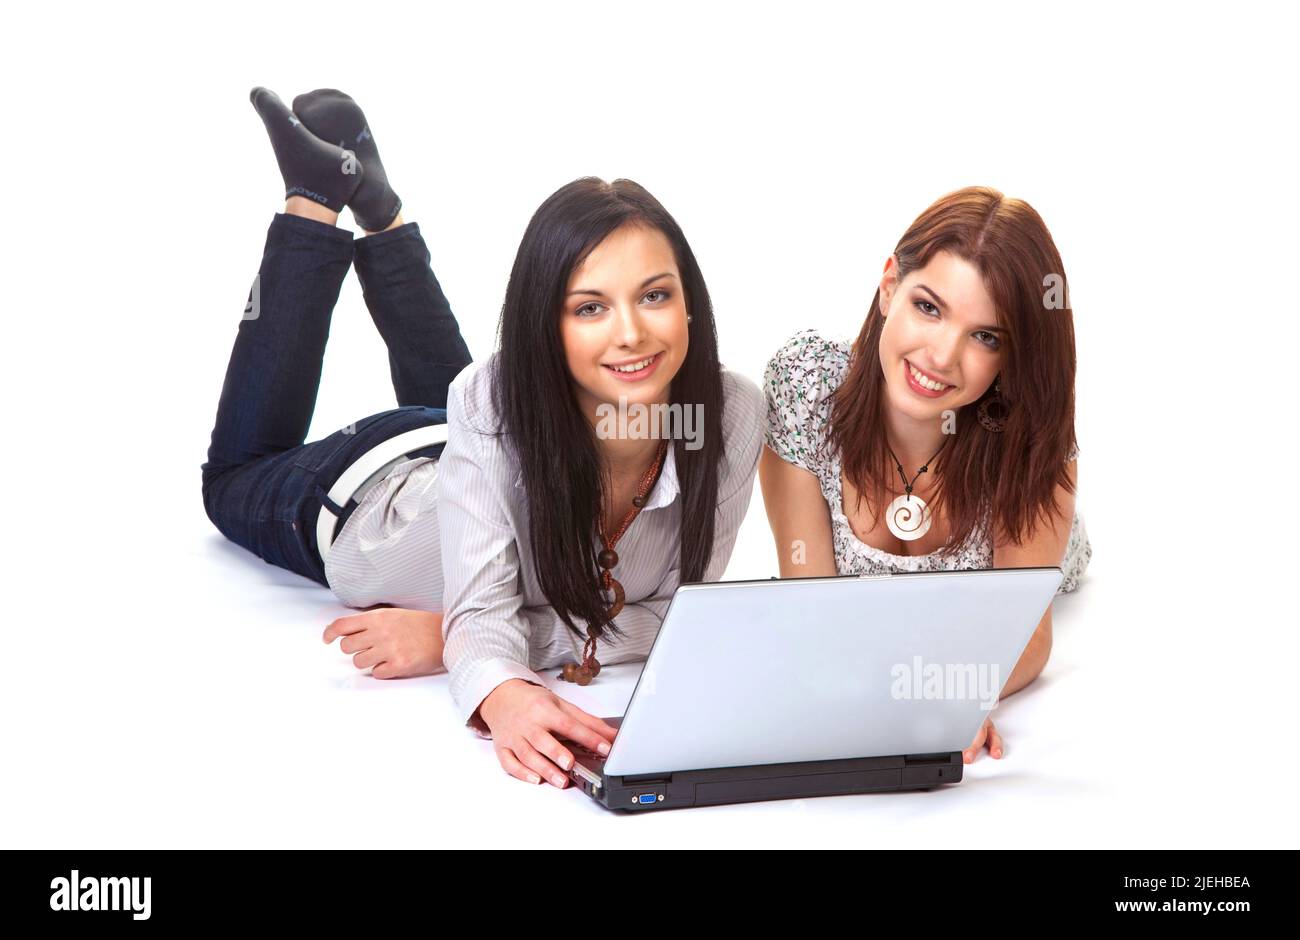 Zwei junge Frauen lachen und arbeiten gemeinsam an einem Laptop, 20, 25, Jahre, Studentinnen, Studenten, Stock Photo